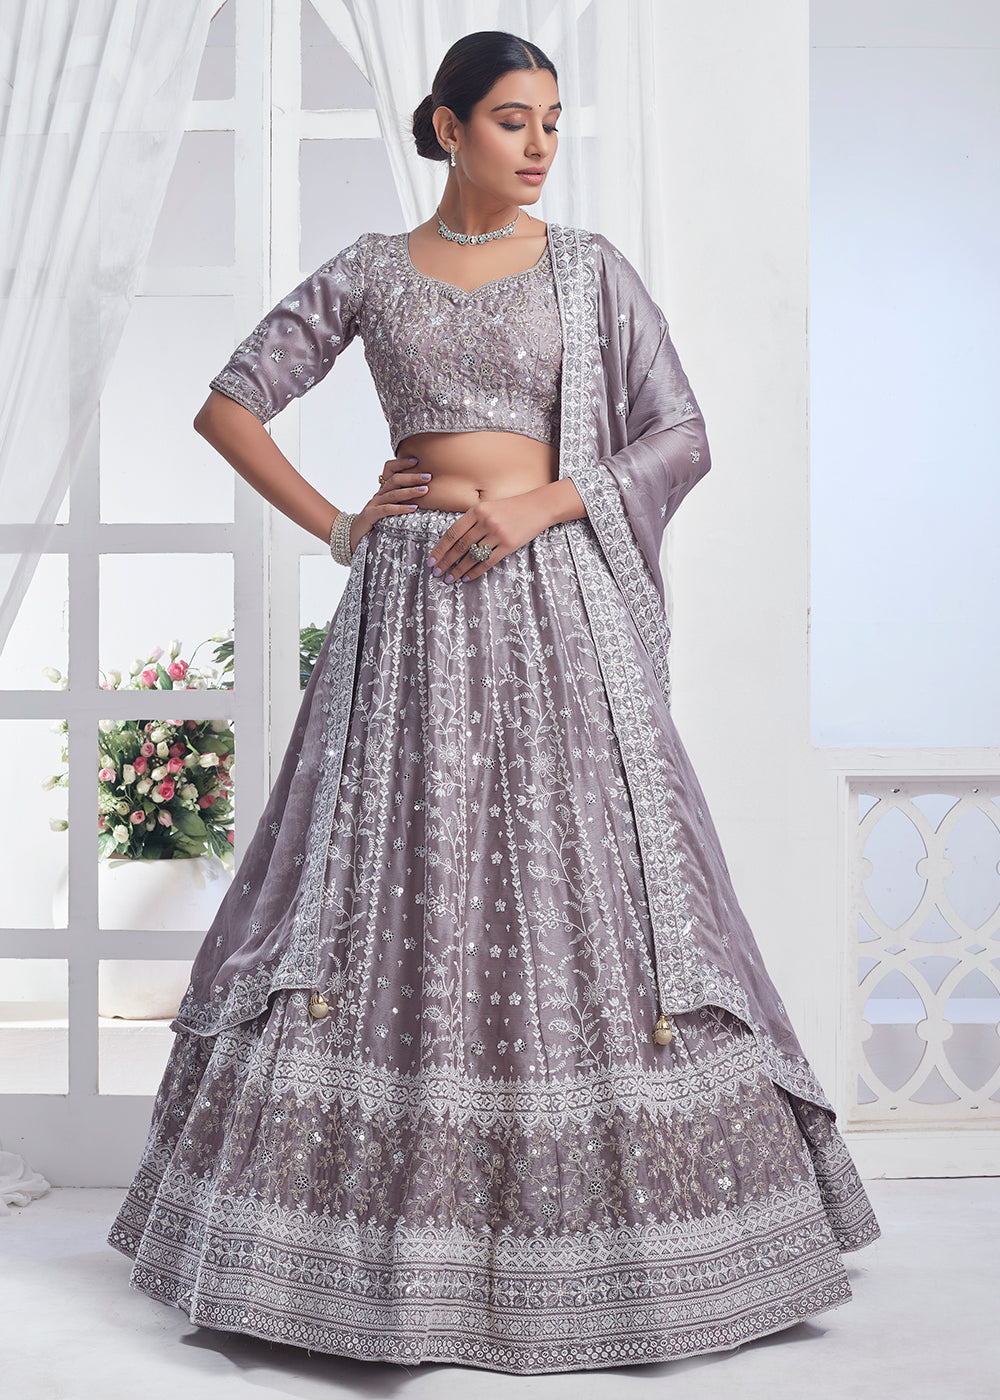 Buy Now Grey Designer Style Embroidered Wedding Lehenga Choli Online in USA, UK, Canada & Worldwide at Empress Clothing.